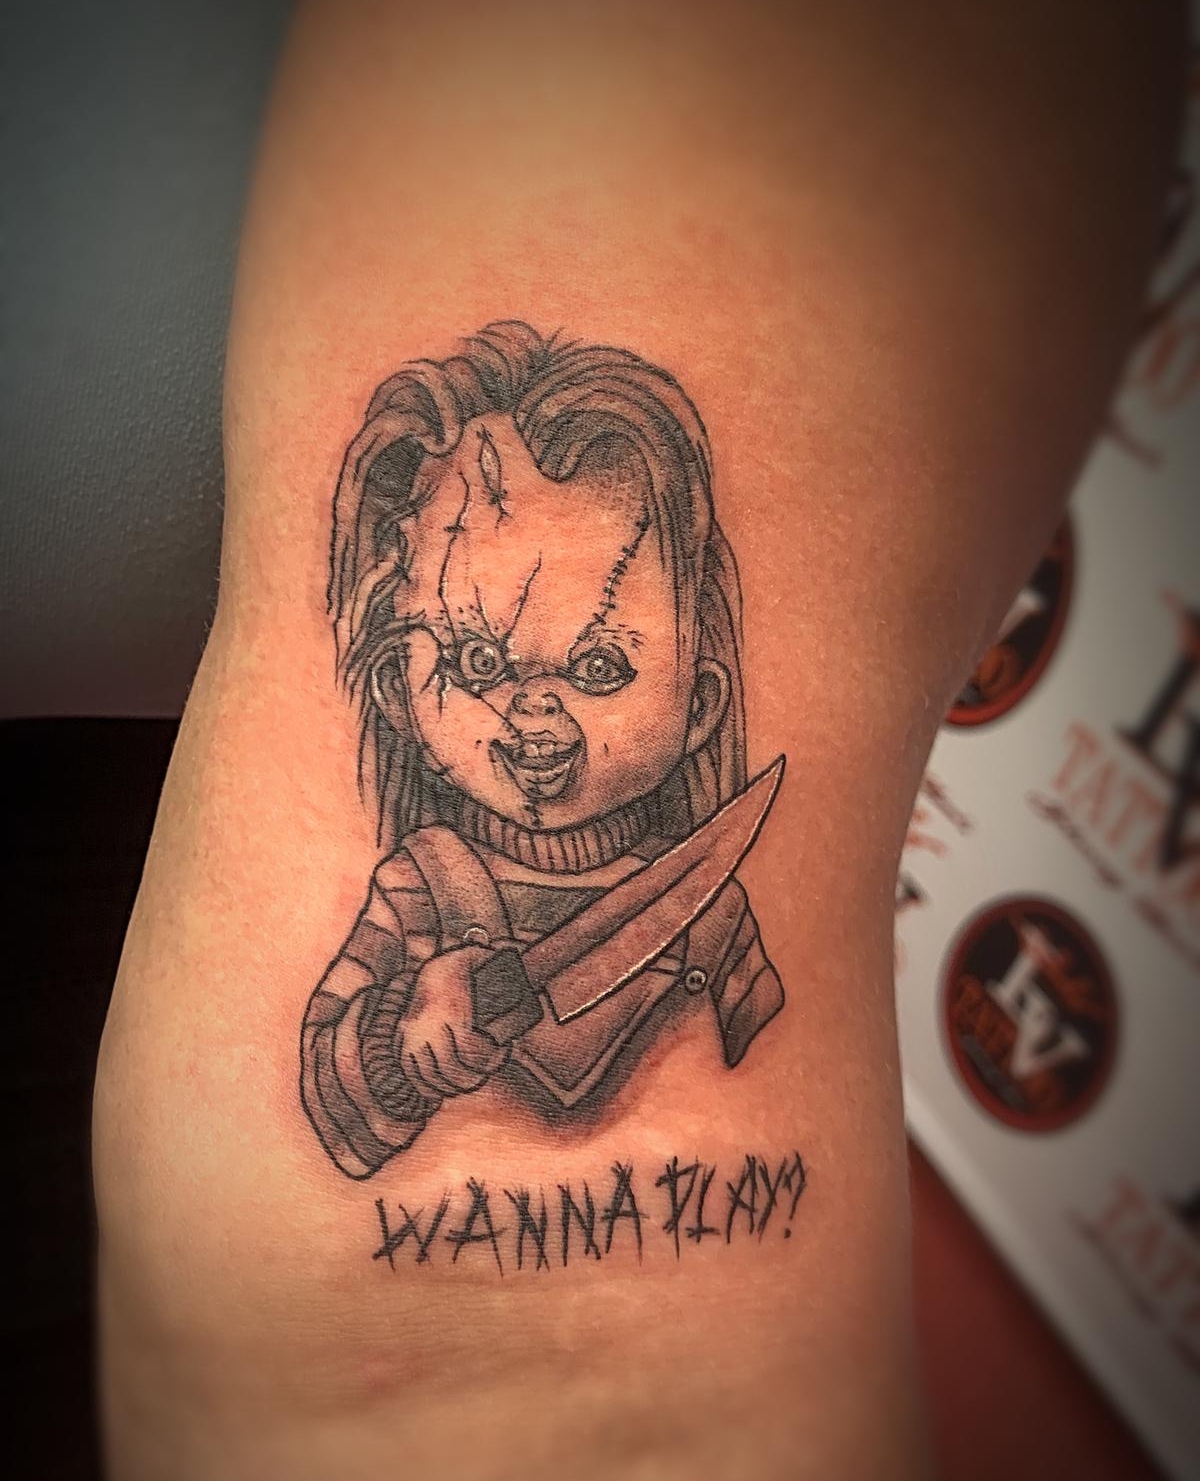 80 Chucky Tattoo Ideas For Men  Horror Movie Designs  Chucky tattoo  Movie tattoos Tattoos